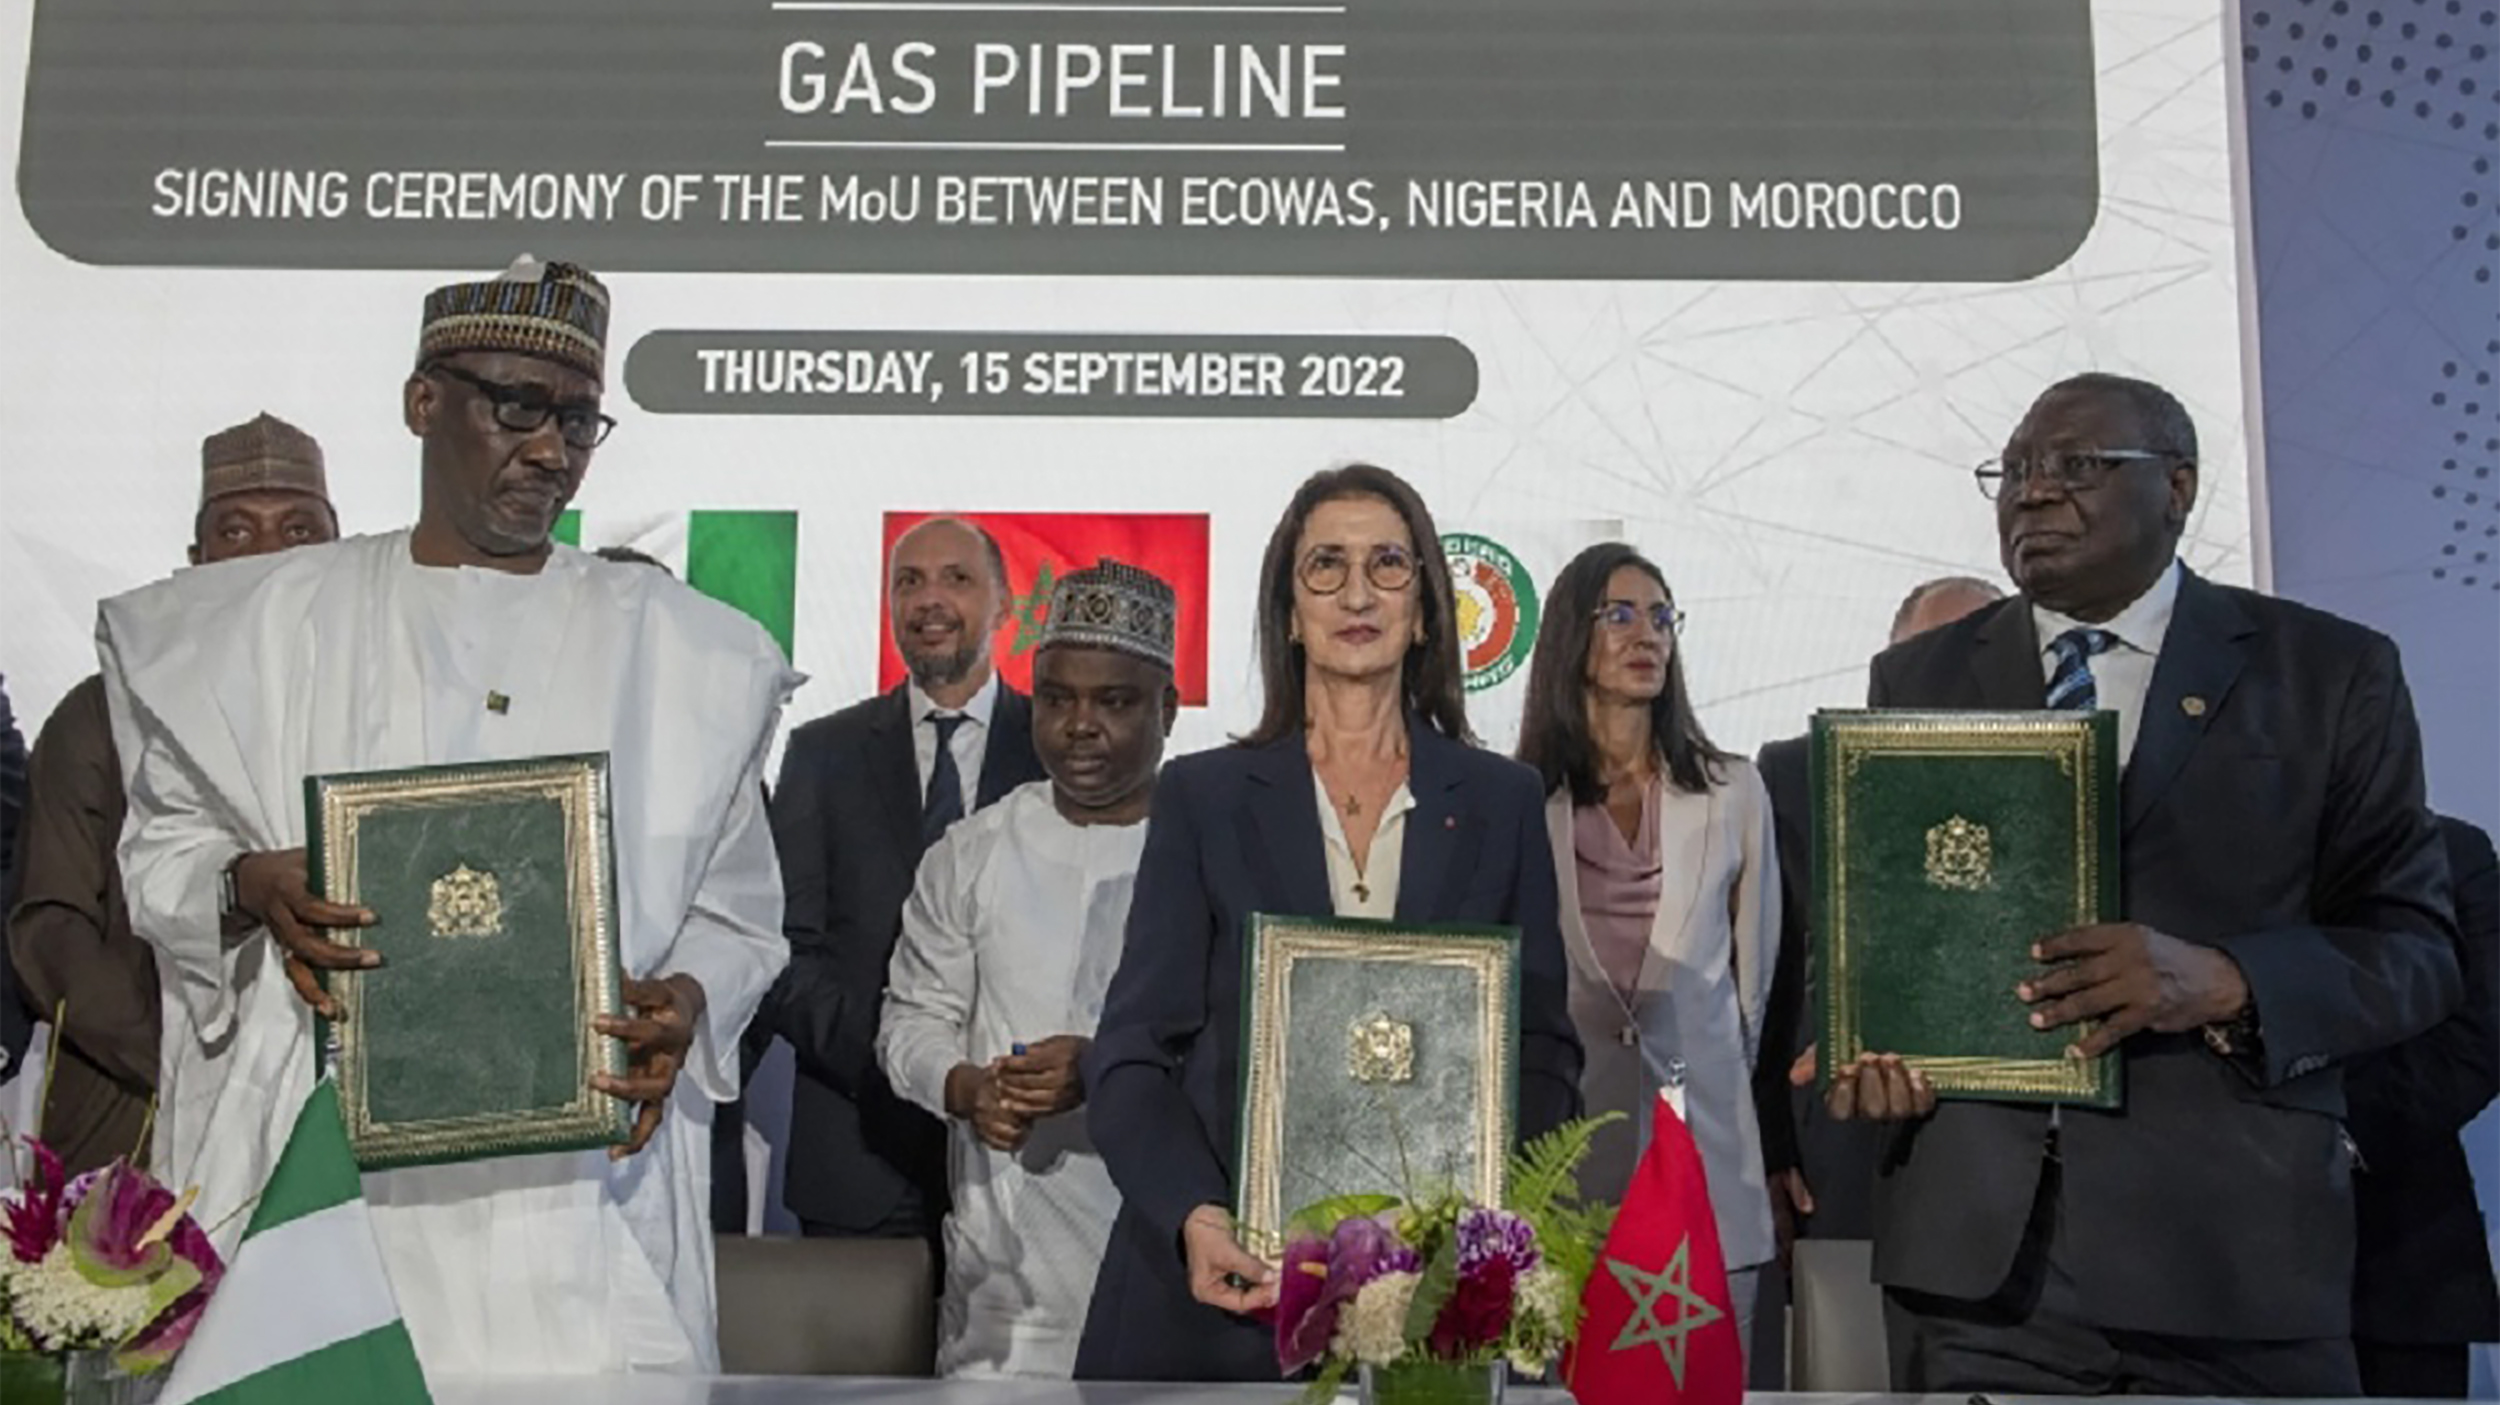 الأهمية الاقتصادية لمشروع الغاز النيجيري-المغربي